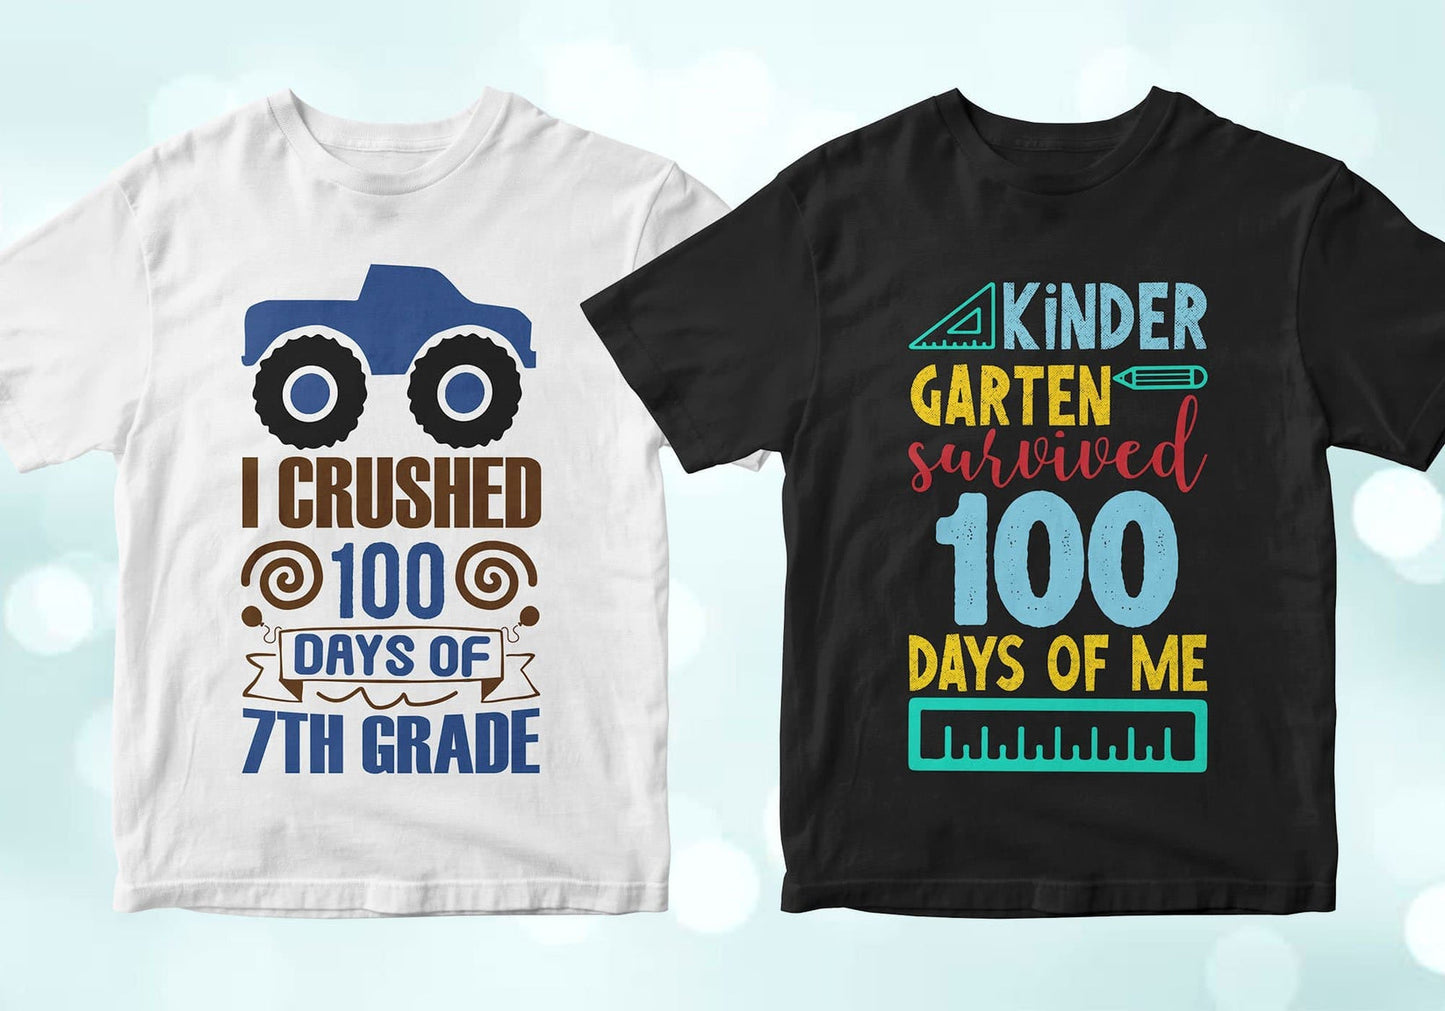 I crushed 100 days of 7th grade, Kindergarten survived 100 days of me